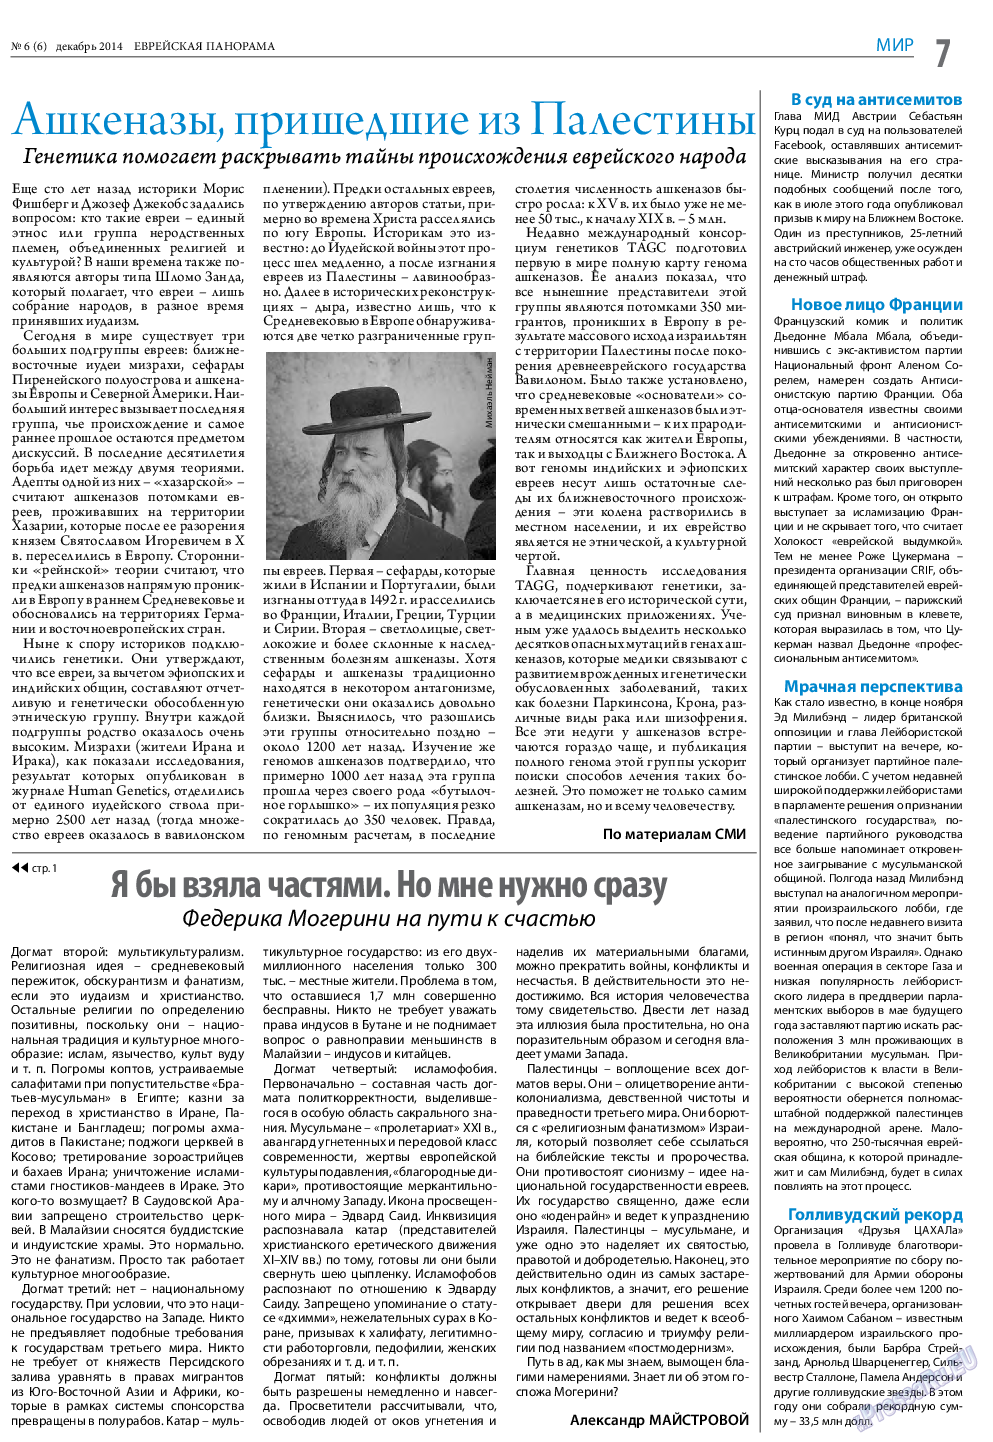 Еврейская панорама (газета). 2014 год, номер 6, стр. 7